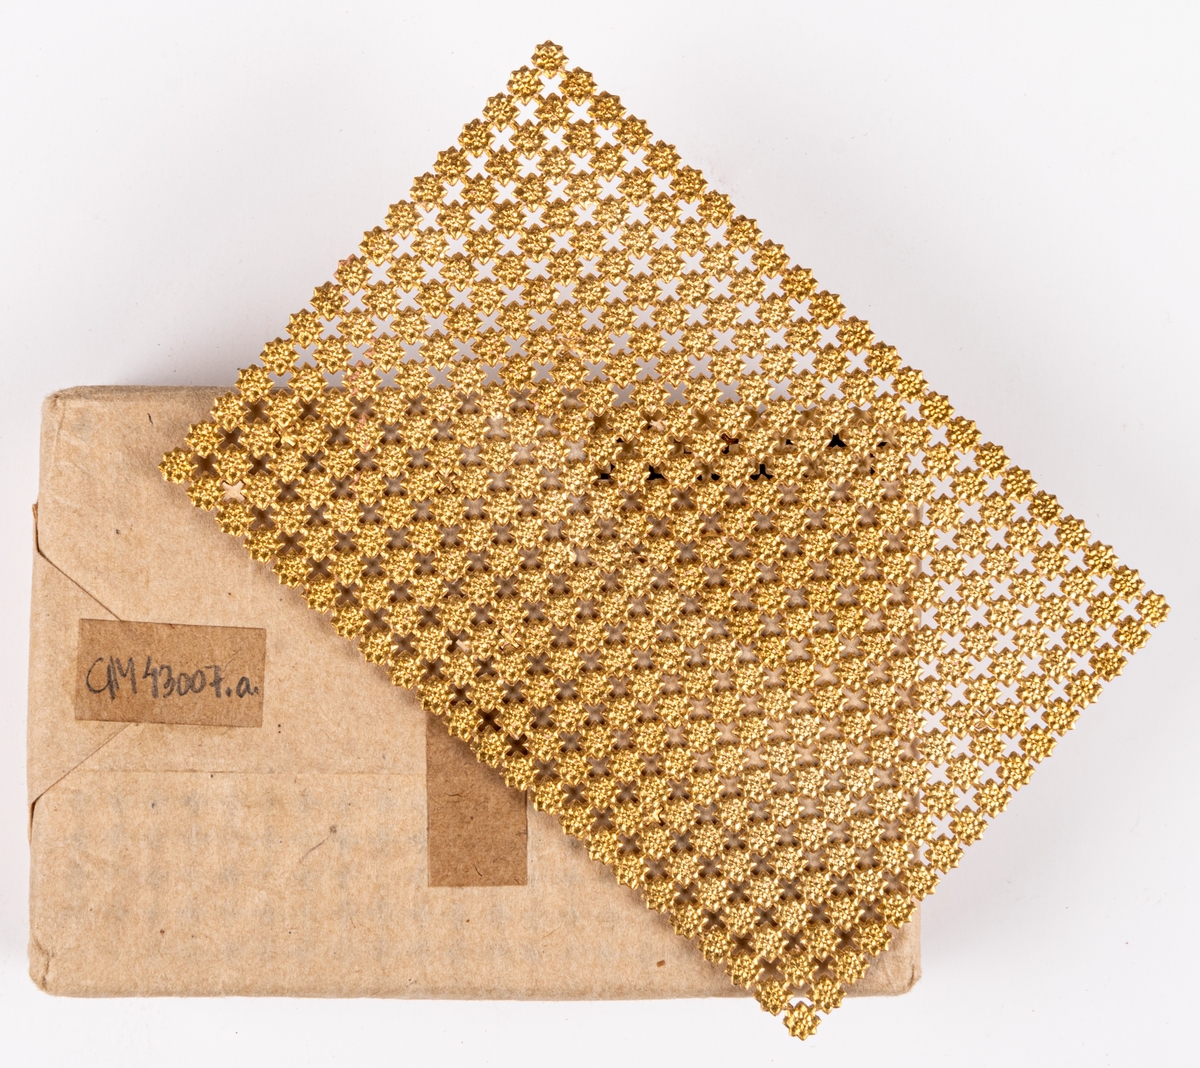 Bunt med guldfärgade pappersstjärnor som använts för dekor av omslag av konfekt.